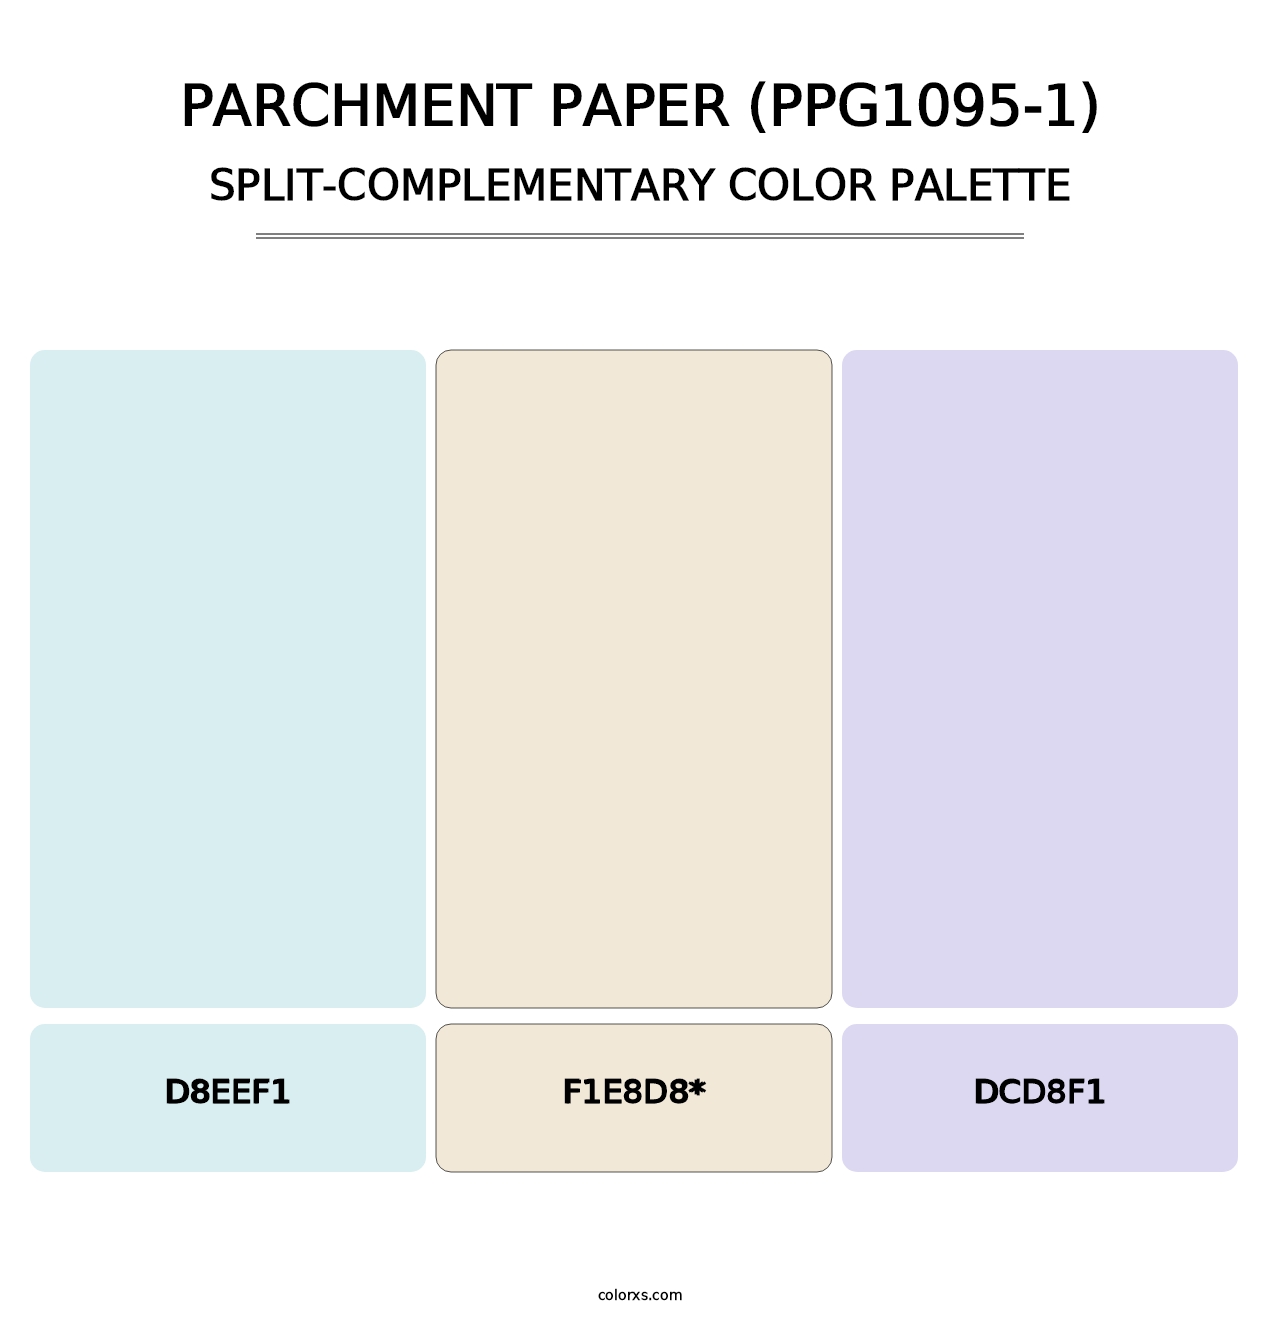 Parchment Paper (PPG1095-1) - Split-Complementary Color Palette